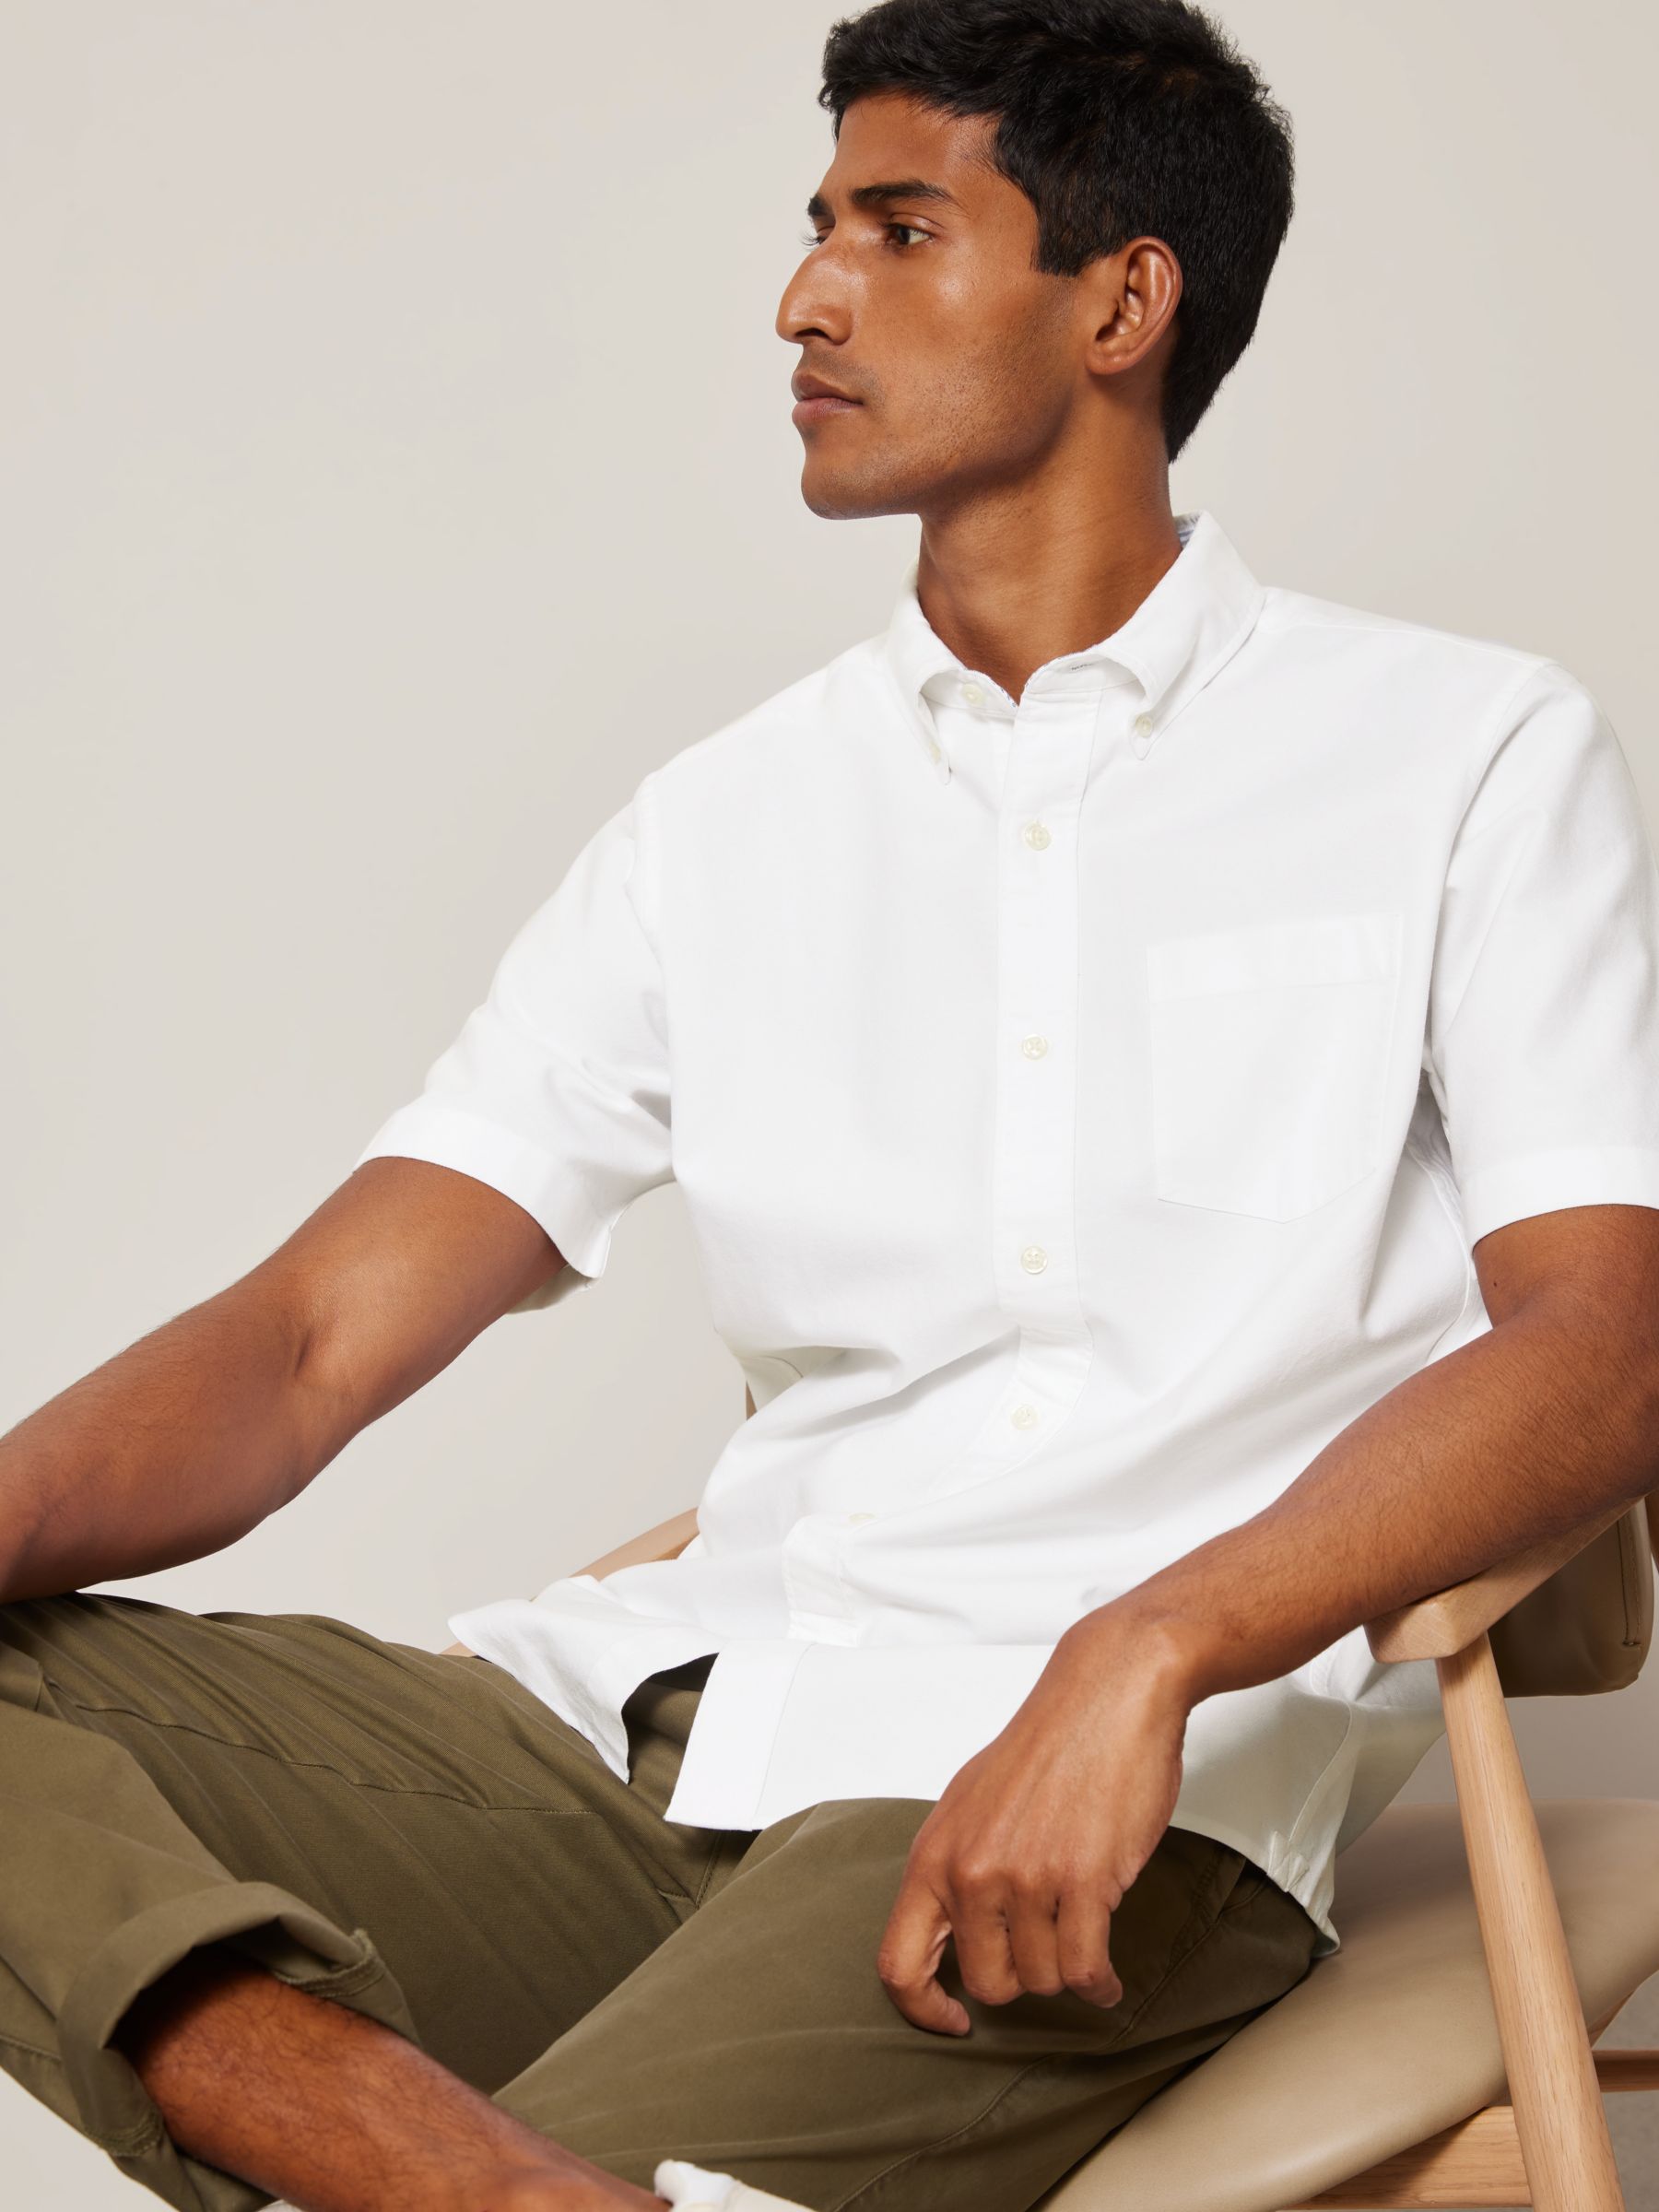 Relaxed Fit Short-sleeved shirt - White - Men